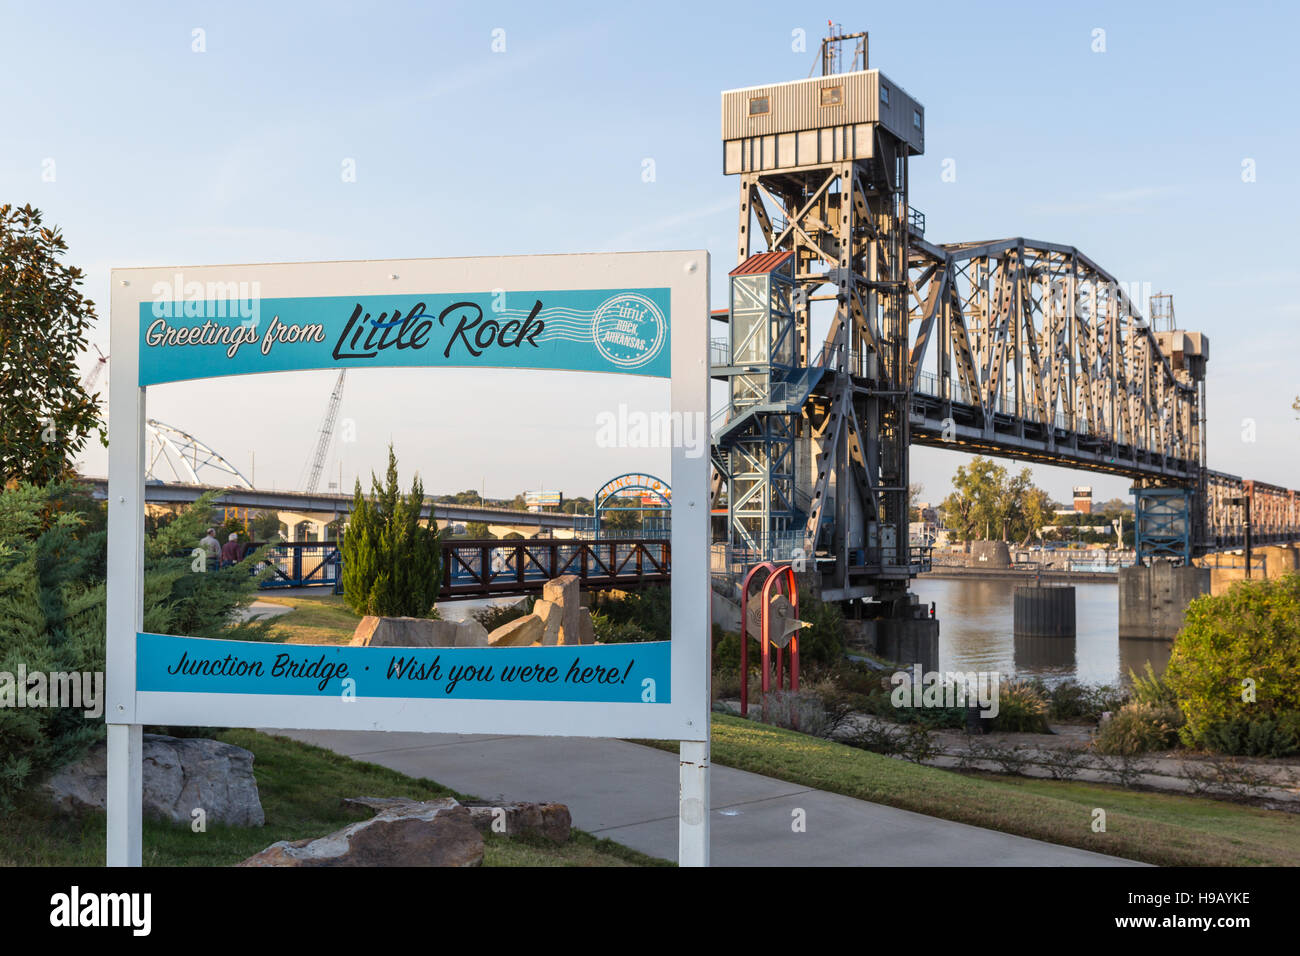 Ein Schild mit "Greetings from Little Rock" auf dem Weg bis zur Kreuzung Brücke in Little Rock, Arkansas. Stockfoto